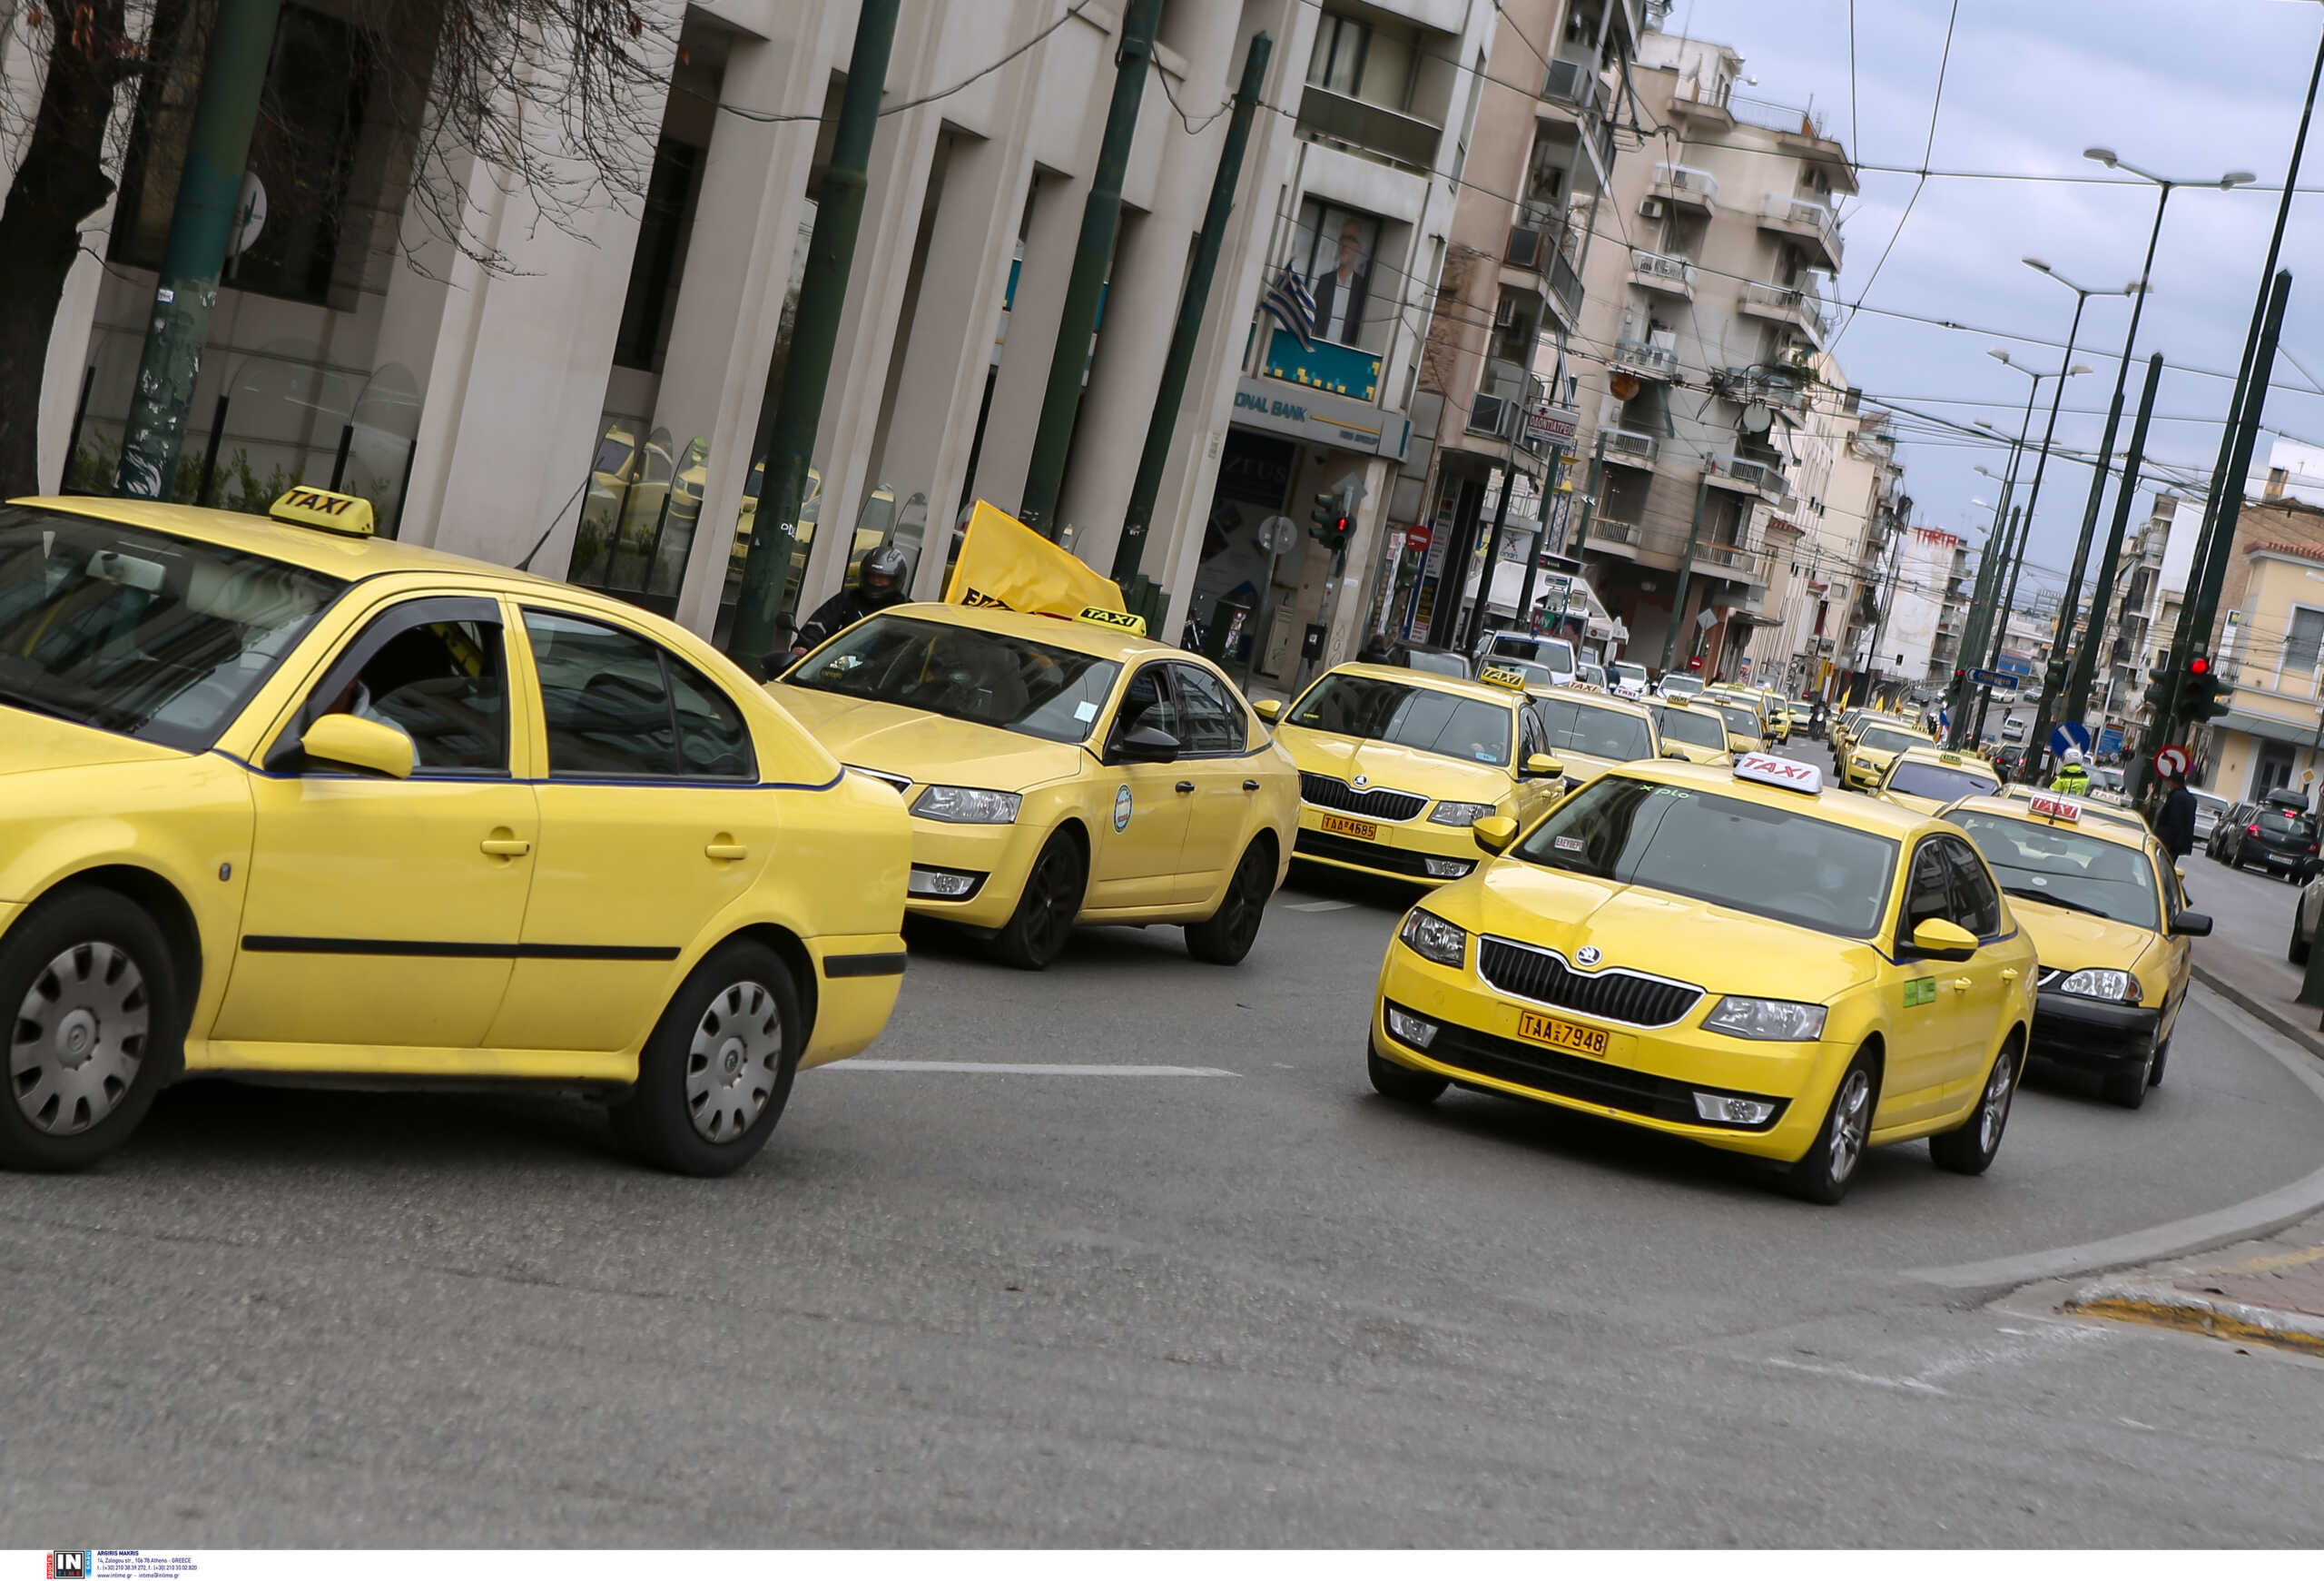 Ταξί: Παρατείνεται μέχρι τέλος του έτους η προθεσμία για αντικατάσταση οχημάτων που έληξε το όριο ηλικίας τους